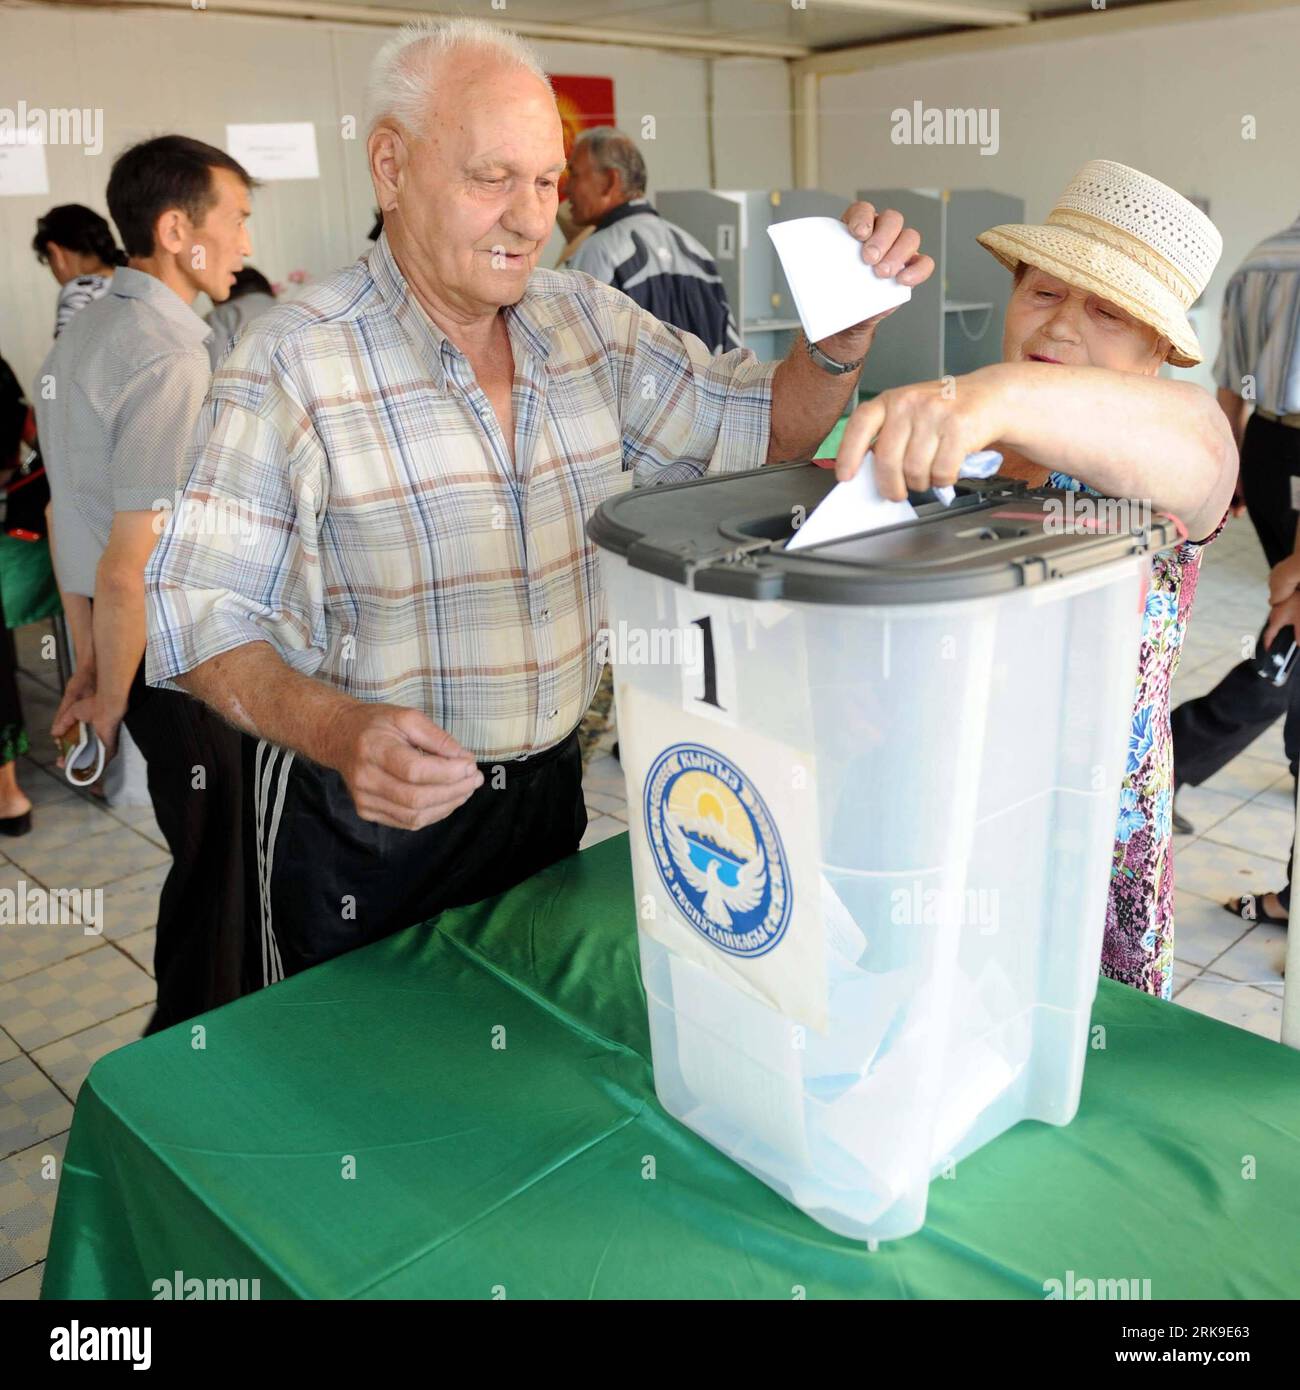 Bildnummer: 54179828 Datum: 27.06.2010 Copyright: imago/Xinhua (100627) -- BISHKEK, 27. Juni 2010 (Xinhua) -- versammeln sich am 27. Juni 2010 in einer Wahlstation, um ihre Stimmzettel in Bischkek, der Hauptstadt Kirgisistans, abzugeben. Die kirgisischen Wähler begannen am Sonntag, in rund 2.300 Wahllokalen im ganzen Land Stimmzettel abzugeben, um über das Schicksal einer neuen Verfassung zu entscheiden, die eine parlamentarische Demokratie in Kirgisistan schaffen würde. (Xinhua/Sadat) (zhs) (4)KIRGISISTAN-POLITIK-VERFASSUNGSREFERENDUM PUBLICATIONxNOTxINxCHN Politik Wahlen kbdig xkg 2010 quadrat o0 Verfassung, Verfassungsänderung, parlamentarische Stockfoto